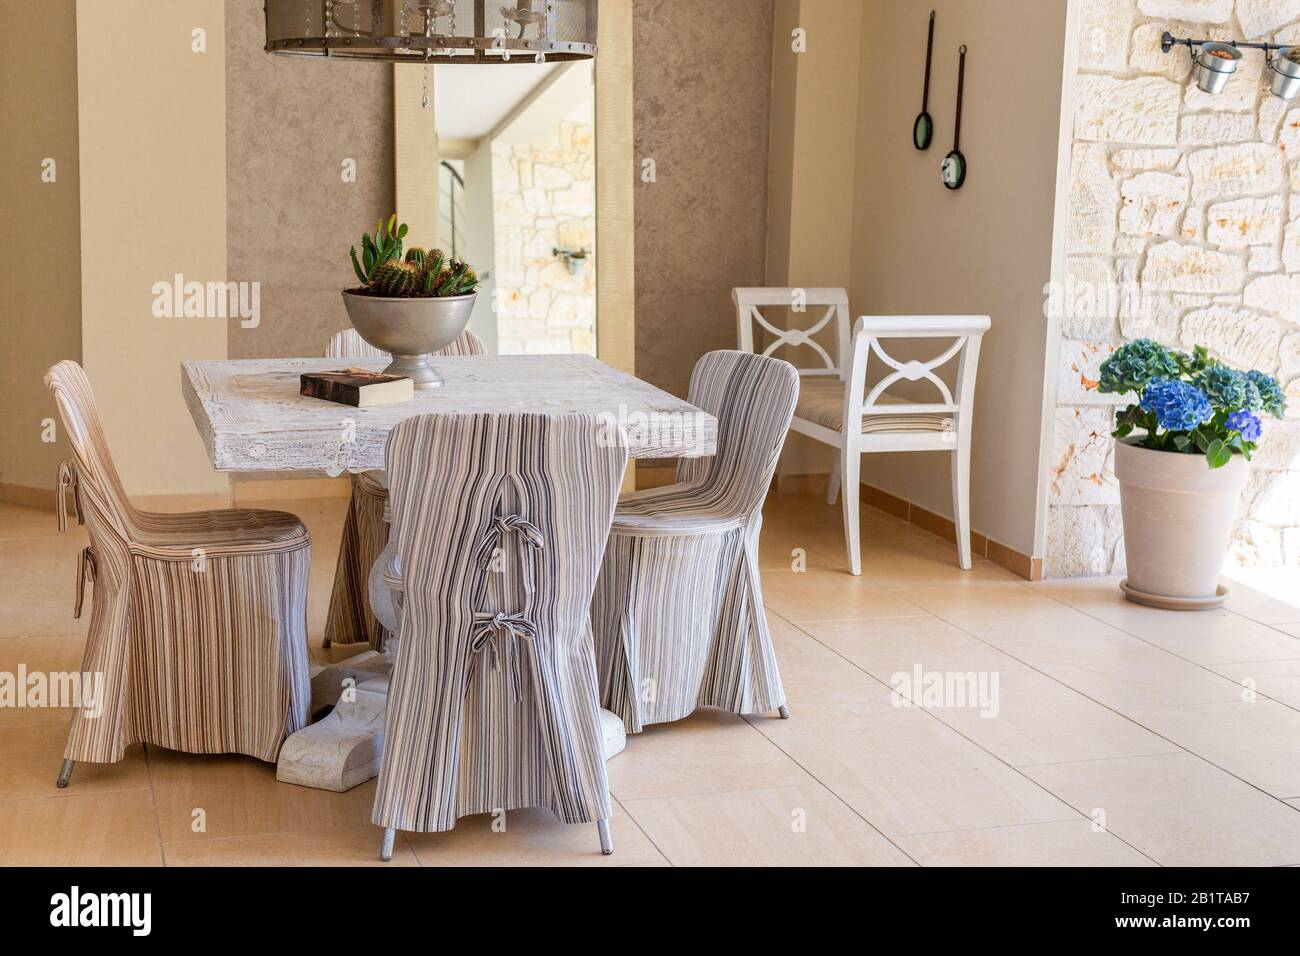 Chaises avec couvertures en tissu rayé autour de la table carrée, banc blanc, hortensia bleu dans pot à fleurs. Intérieur de salon de style méditerranéen Banque D'Images